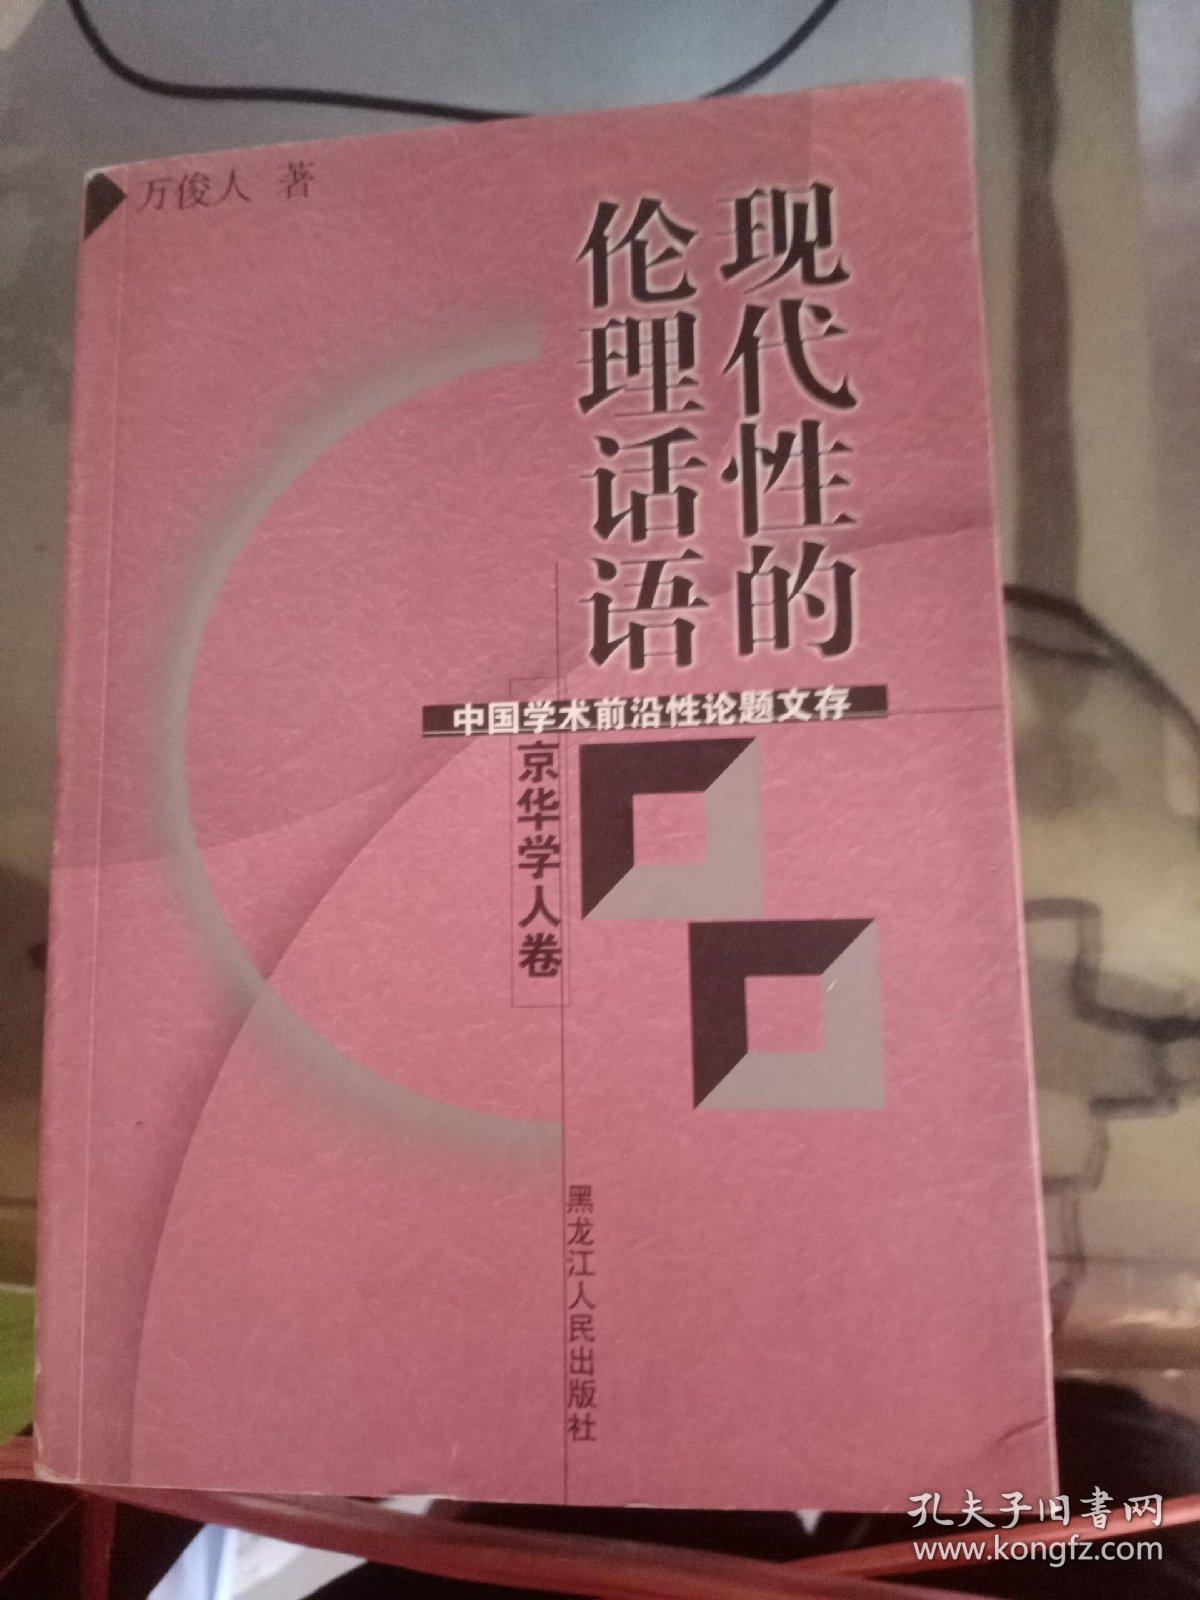 京华学人卷 伦理话语现代性的中国学术前沿性论题文存